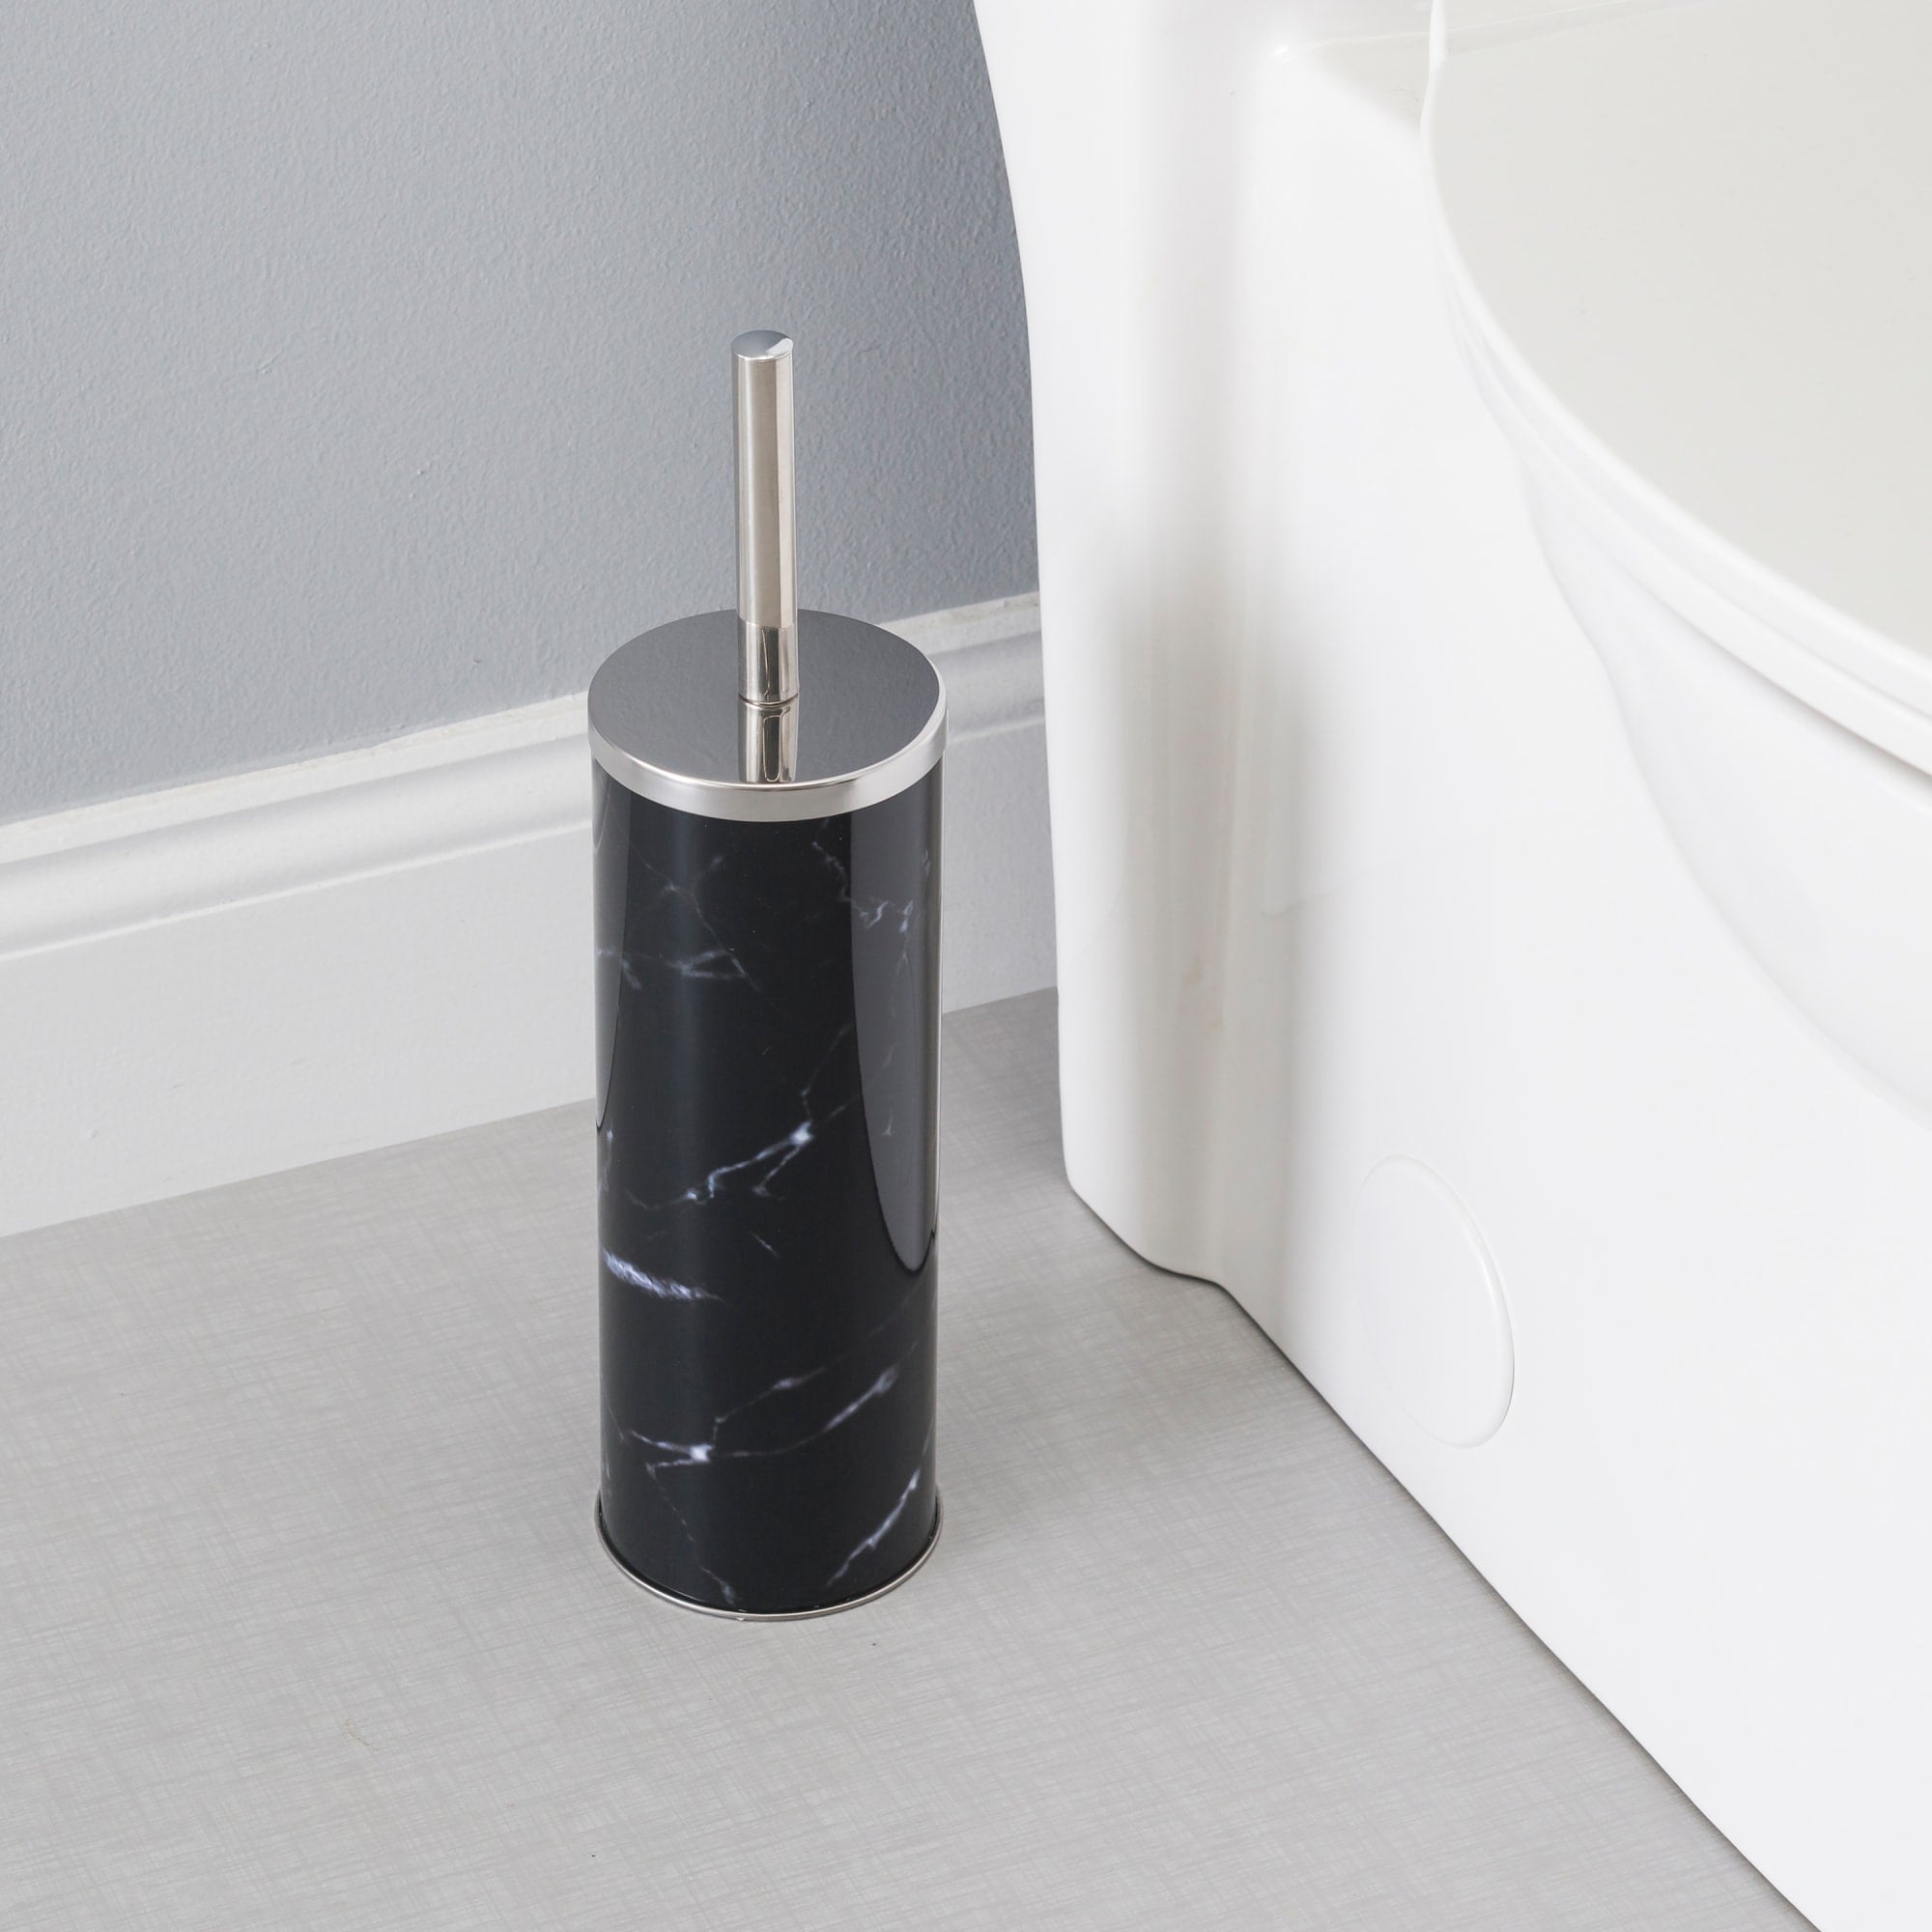 Home Basics Hide-Away Marble Design Toilet Brush Set, Black $4.00 EACH, CASE PACK OF 12